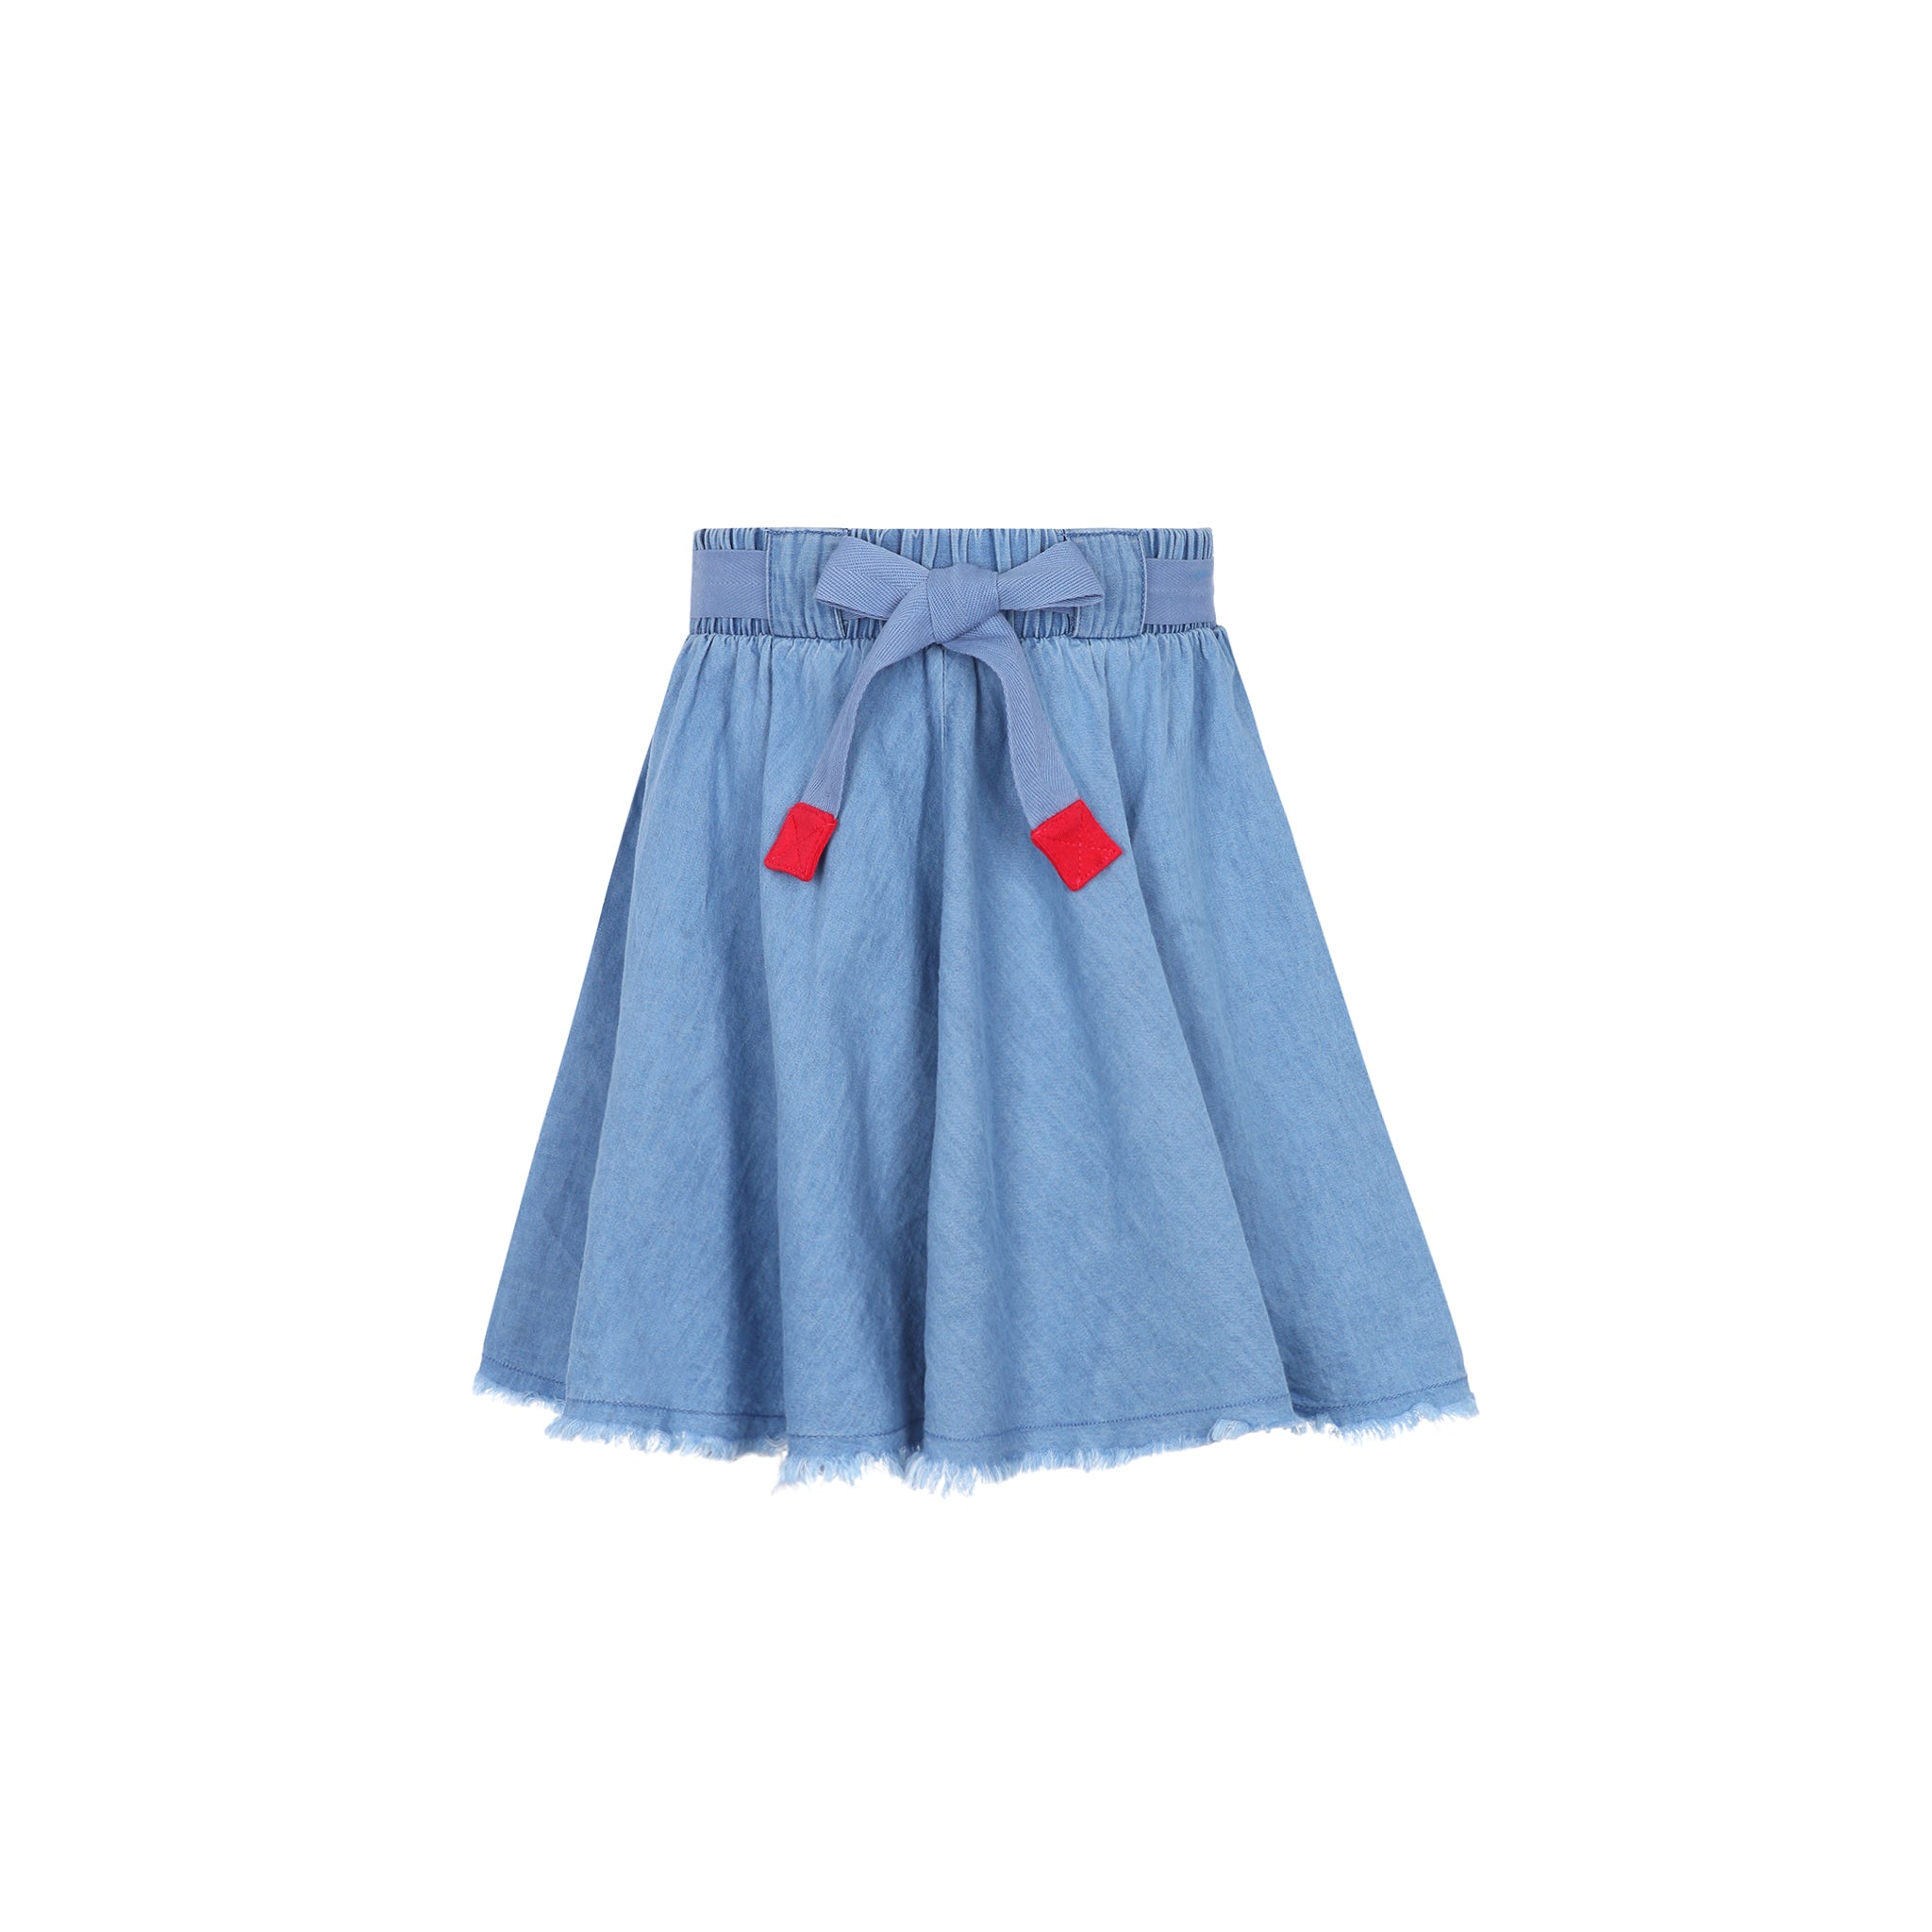 Light Blue Denim Short Skirt with Drawstring